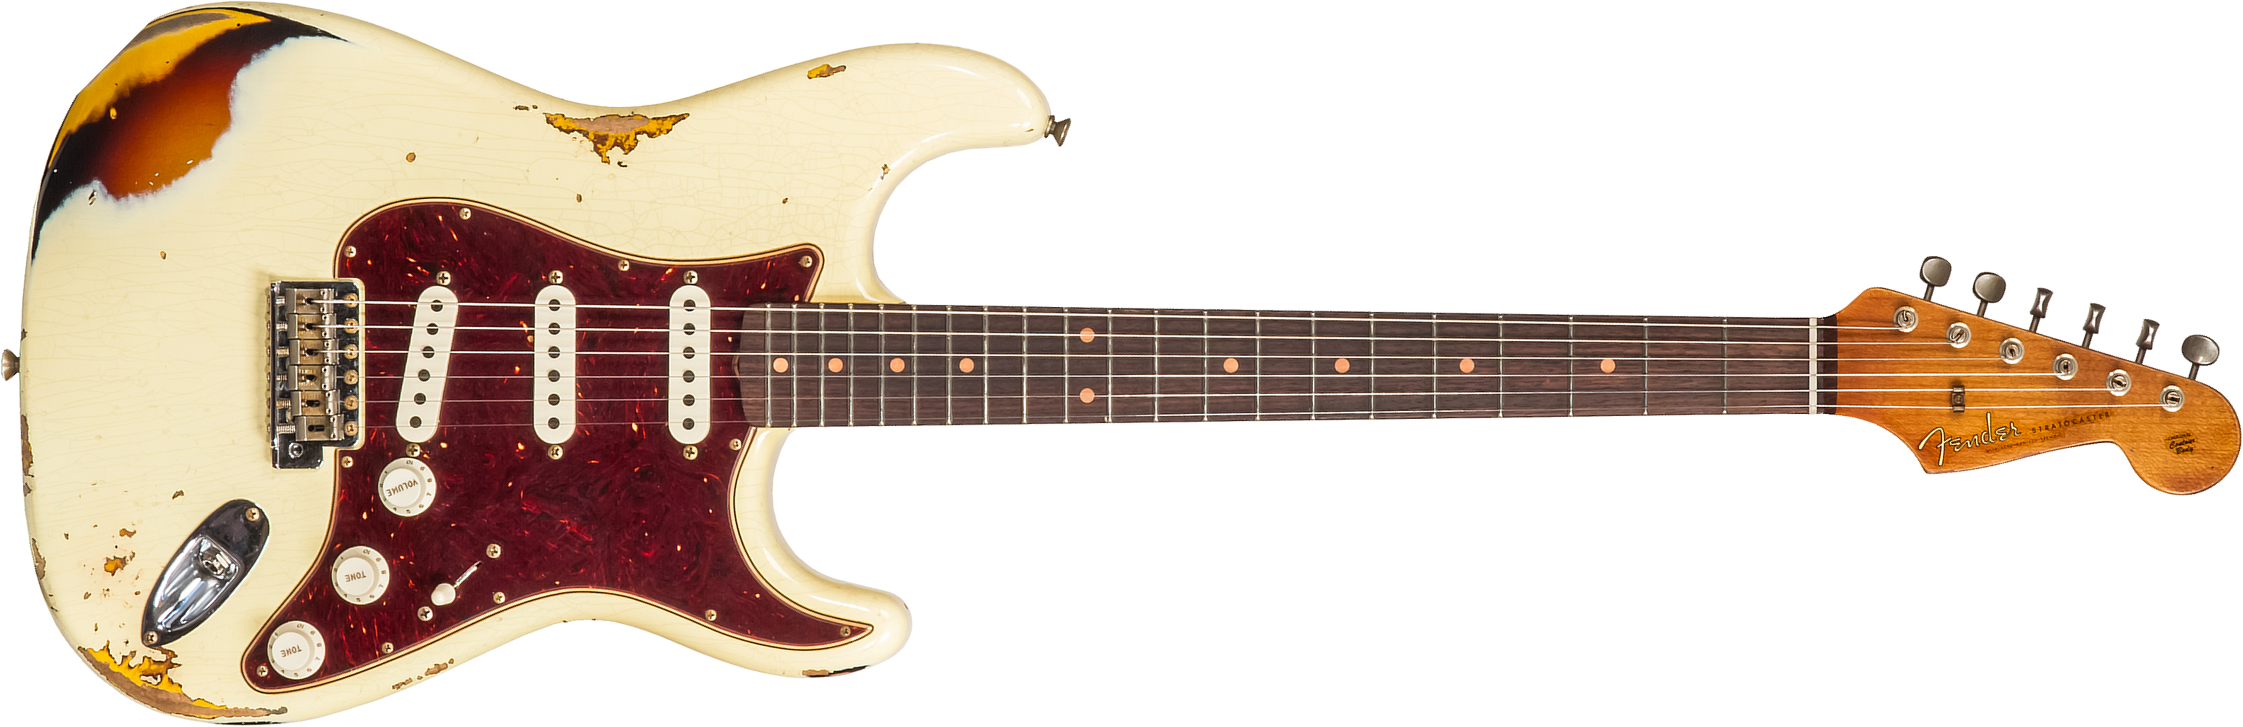 Fender Custom Shop Strat 1961 3s Trem Rw #cz563376 - Heavy Relic Vintage White/3-color Sunburst - Str shape electric guitar - Main picture